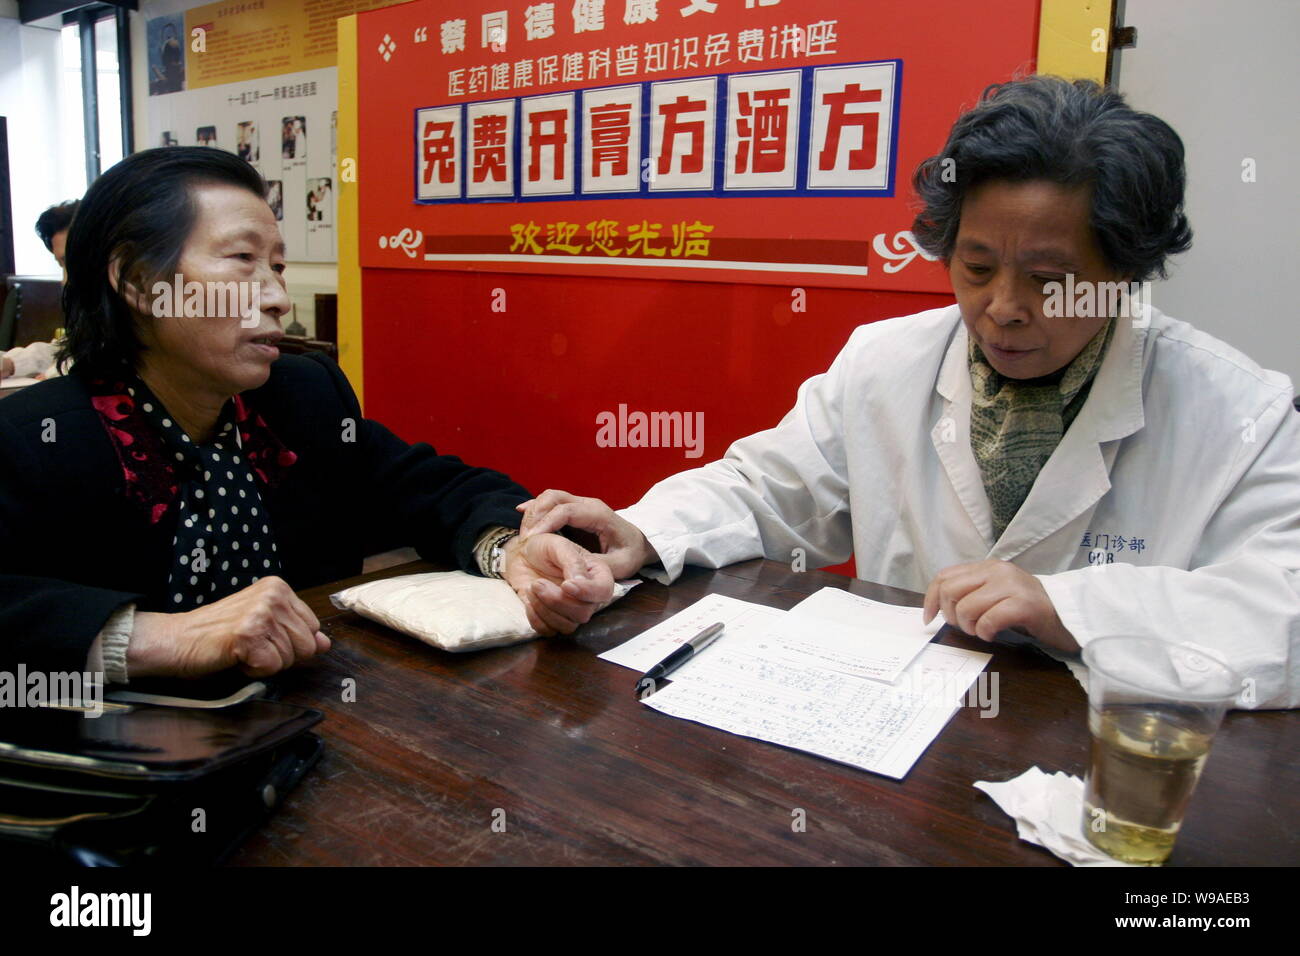 ---- Ein chinesischer Arzt aus der Traditionellen Chinesischen Medizin (TCM) Apotheke Diagnosen Krankheit für einen Patienten in Shanghai, China, 11. November 2009. Stockfoto